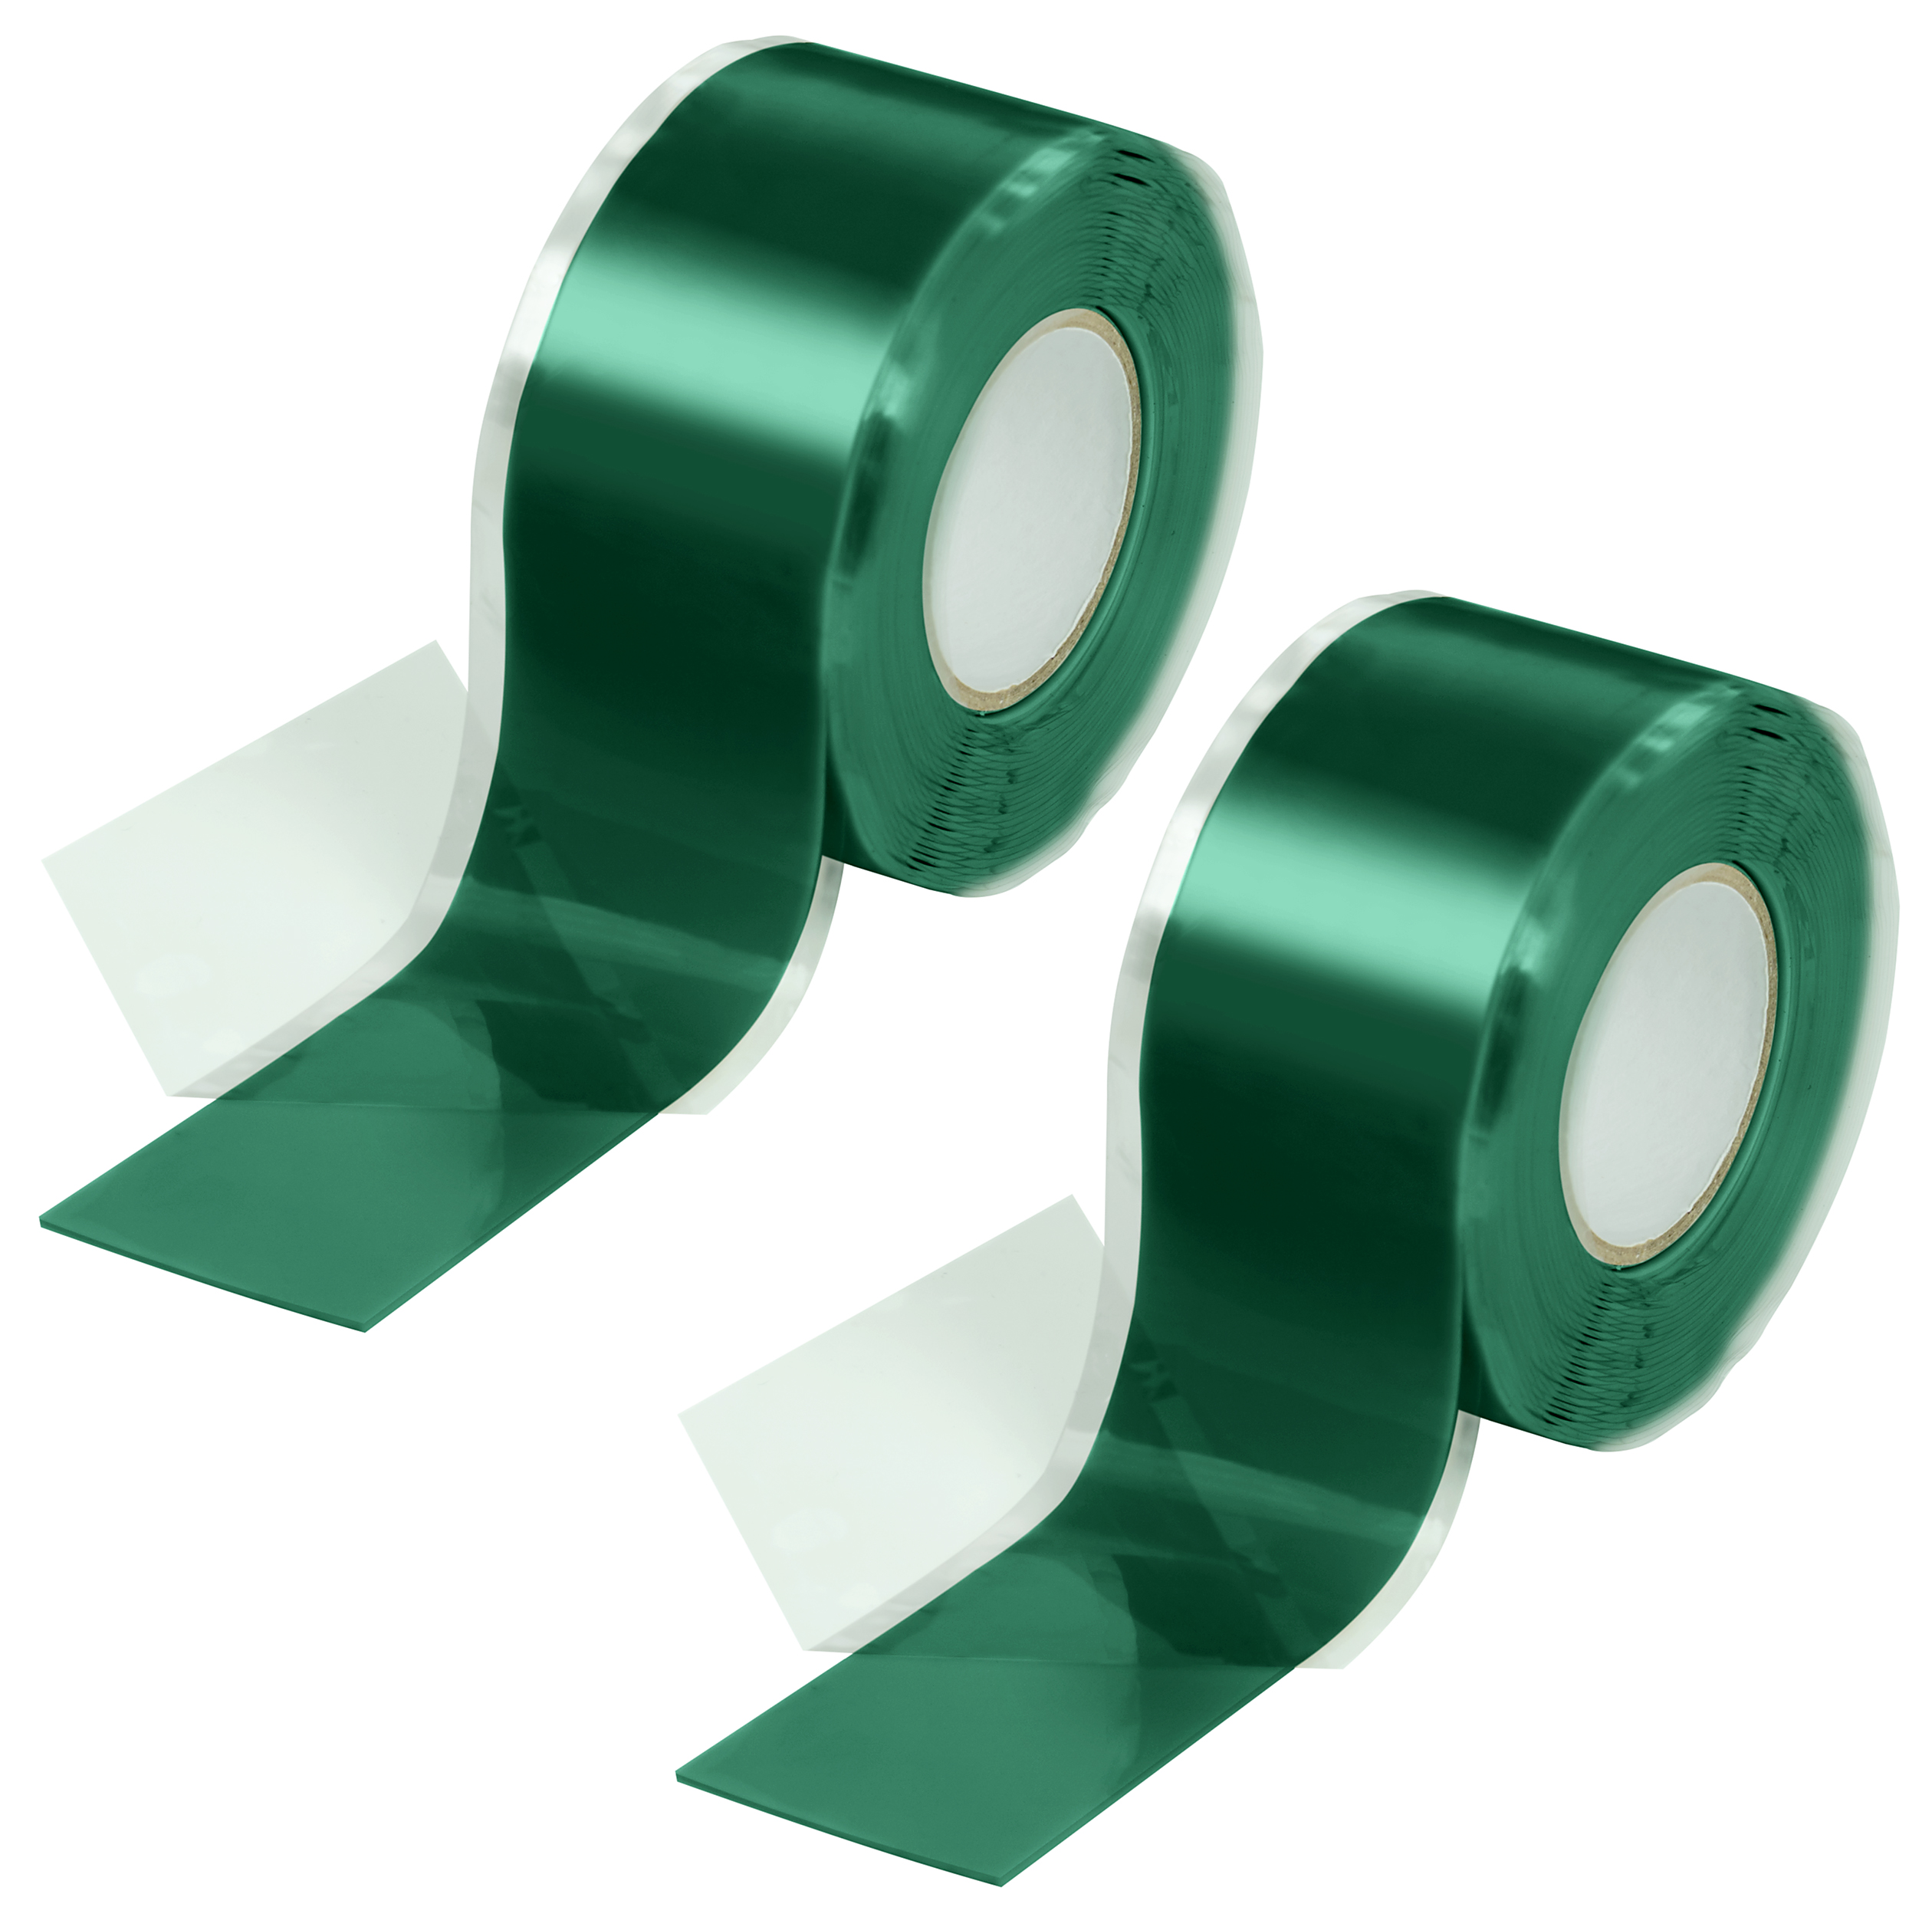 Poppstar selbstverschweißendes Silikonband grün 3m x 25mm